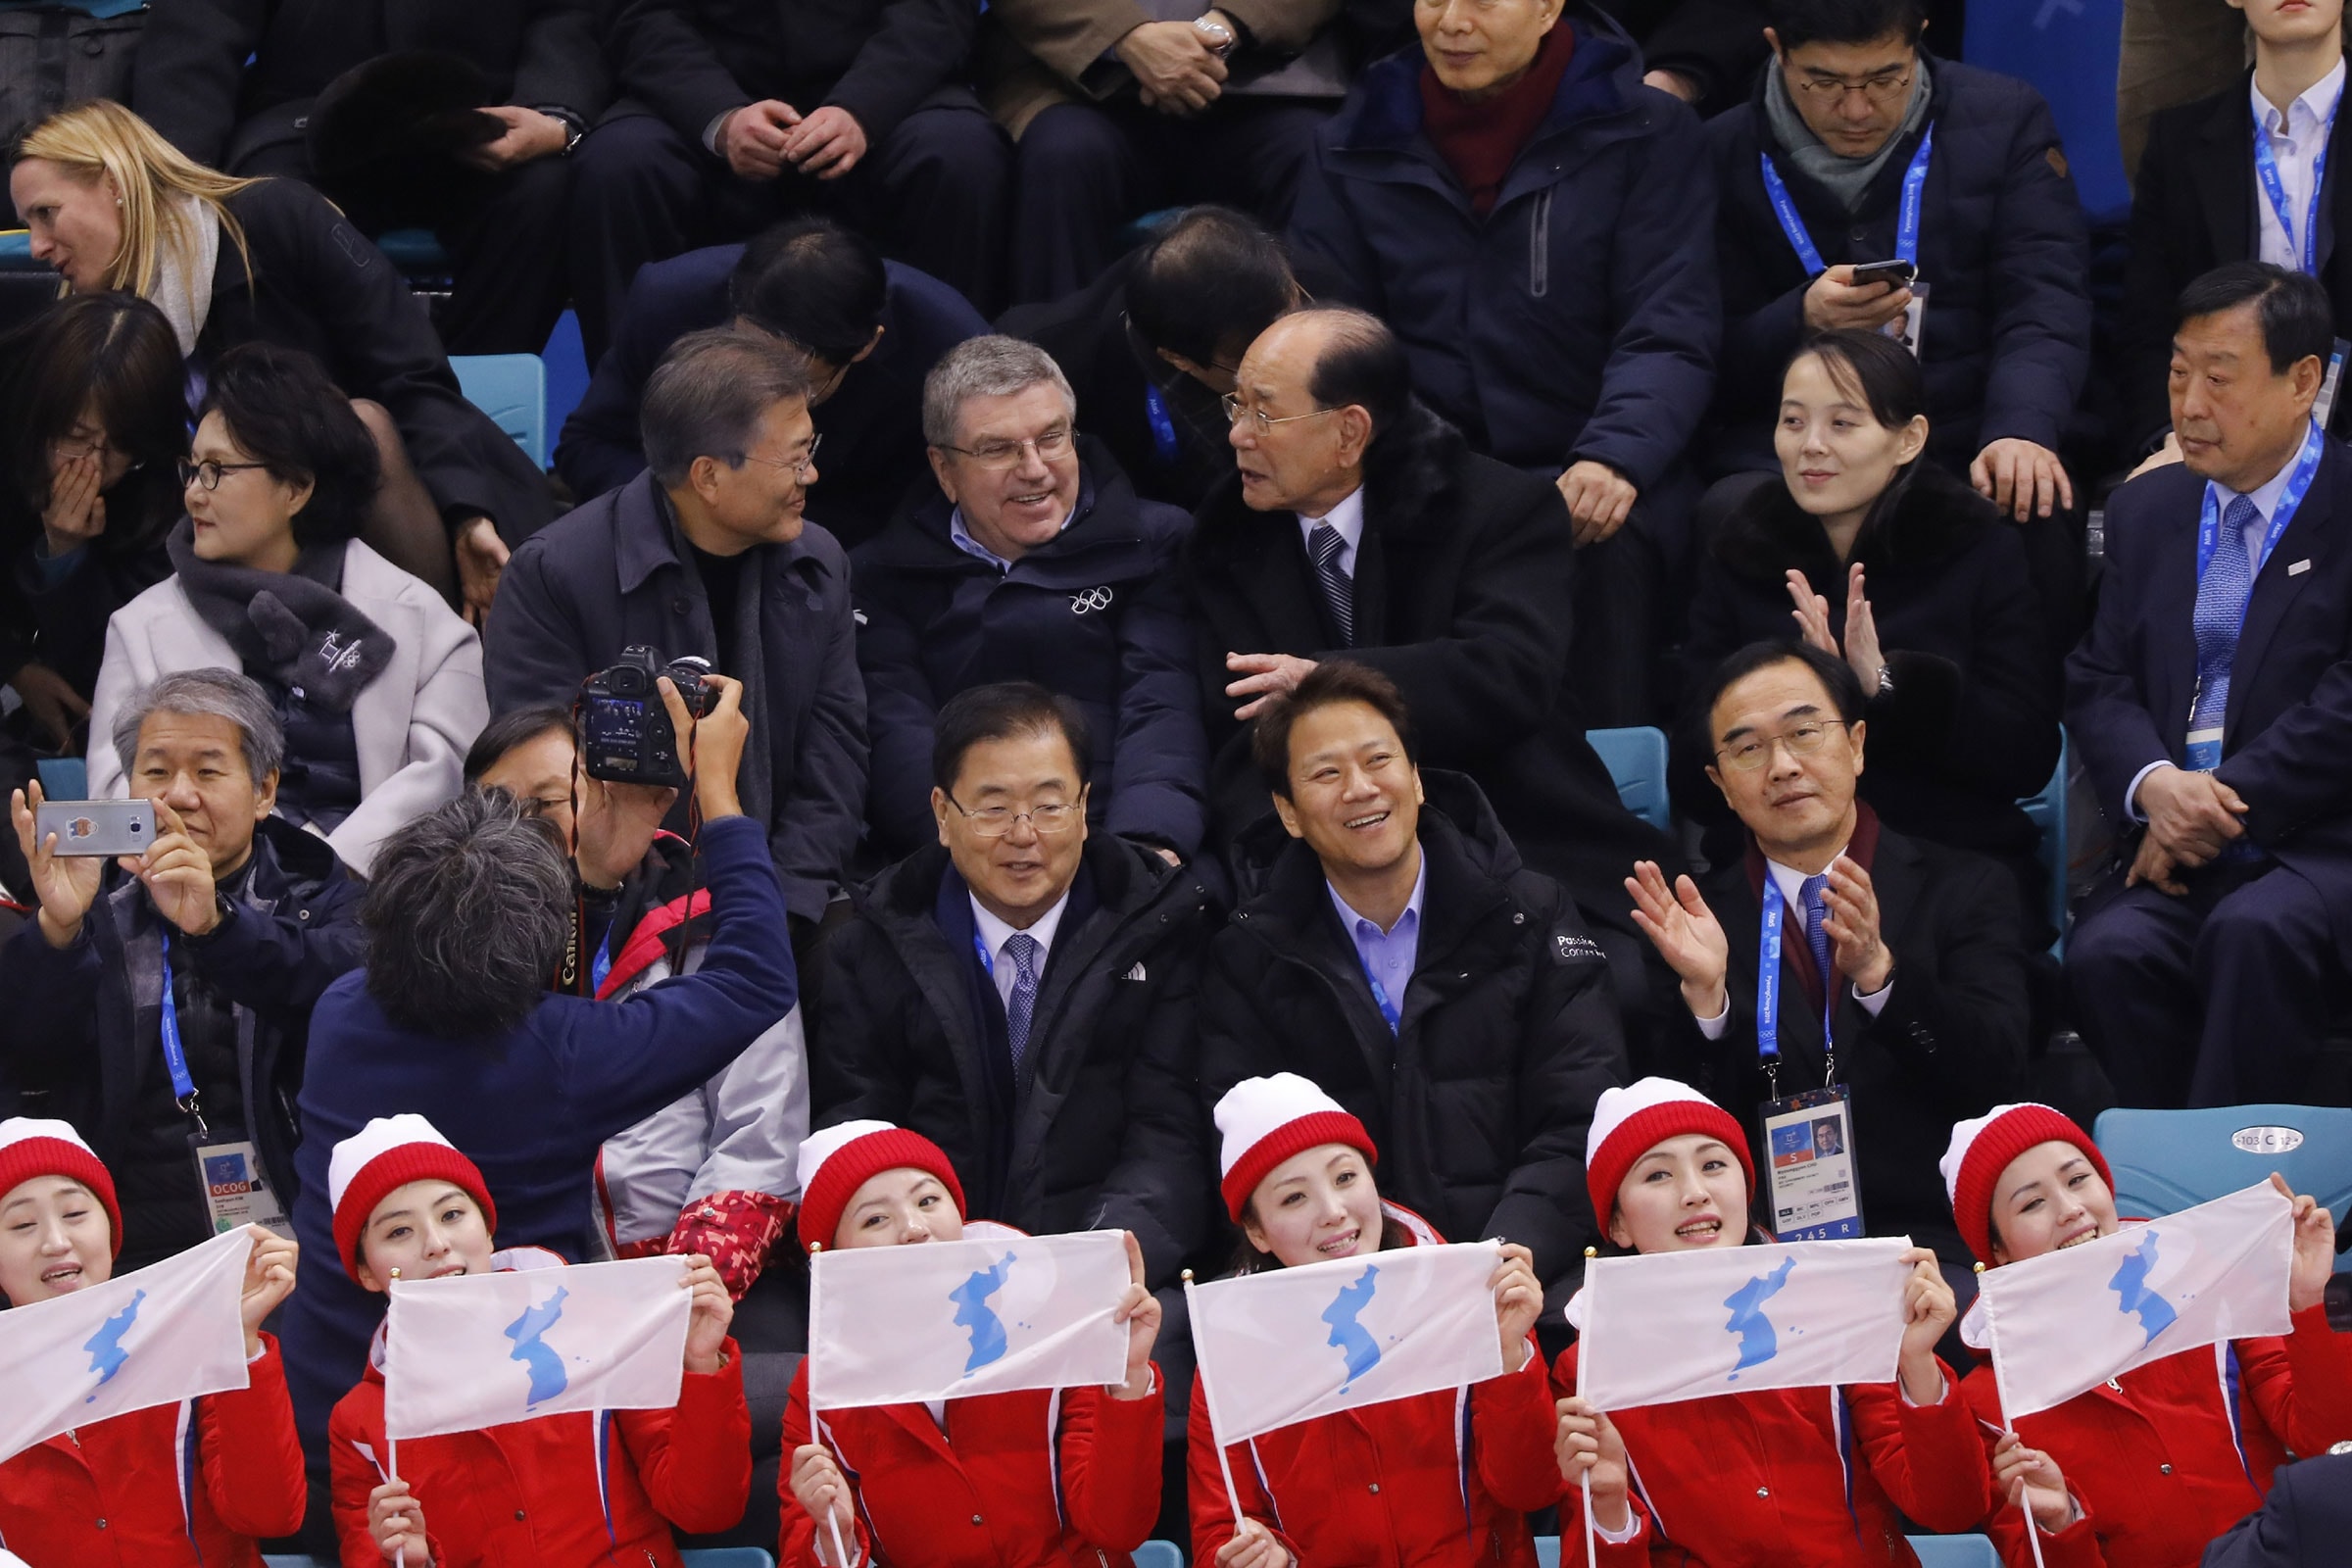 Le président du CIO Thomas Bach aux Jeux Olympiques d'hiver de PyeongChang 2018.